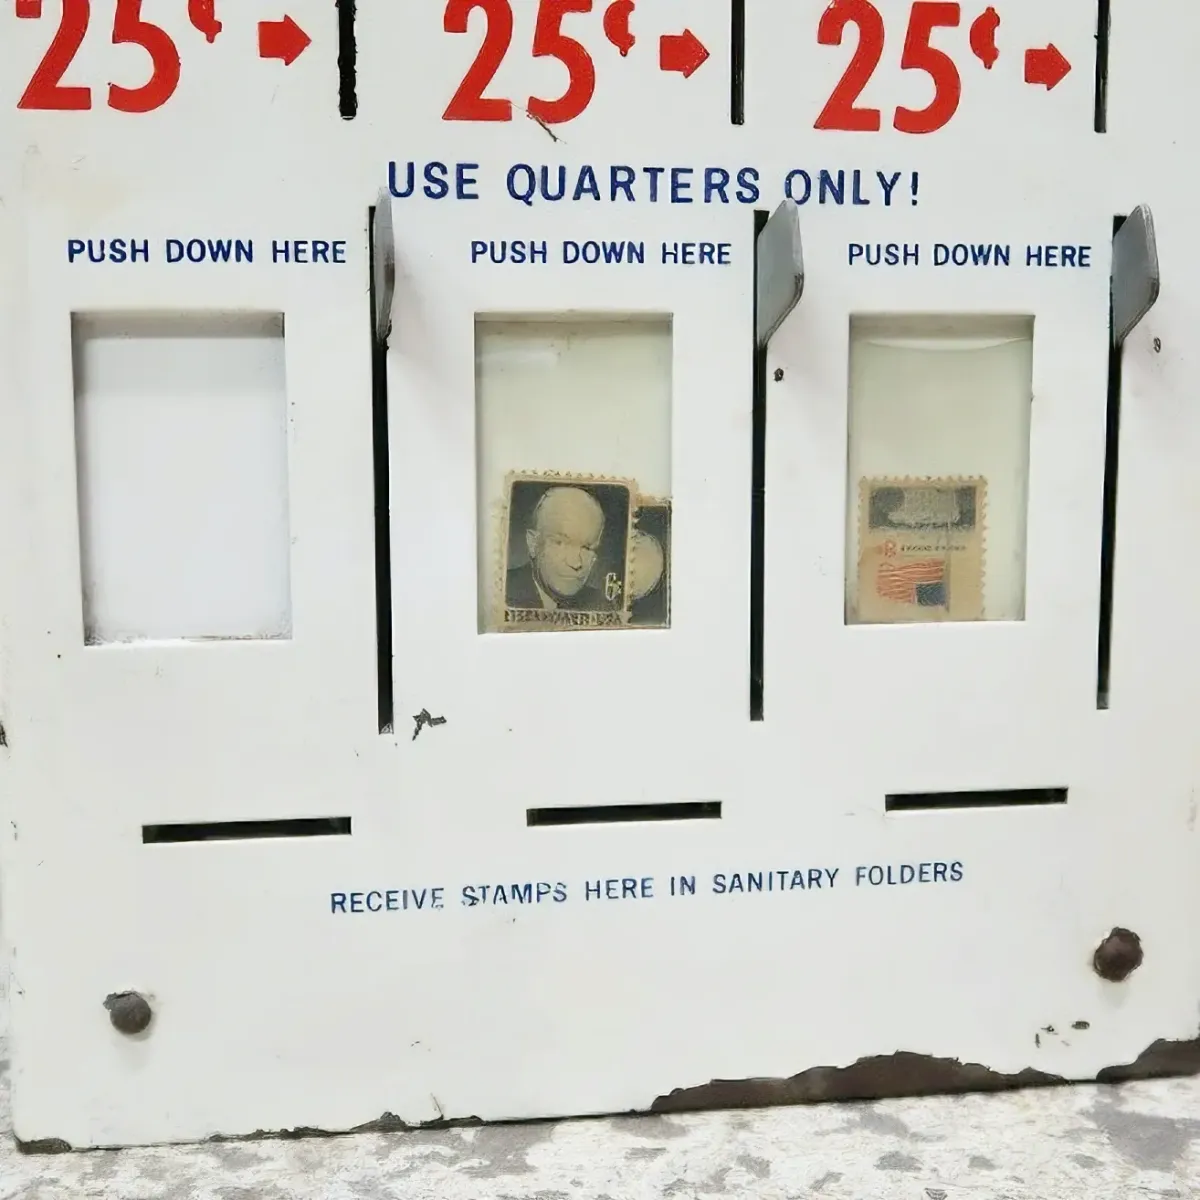 ビンテージ スタンプマシン 切手販売機